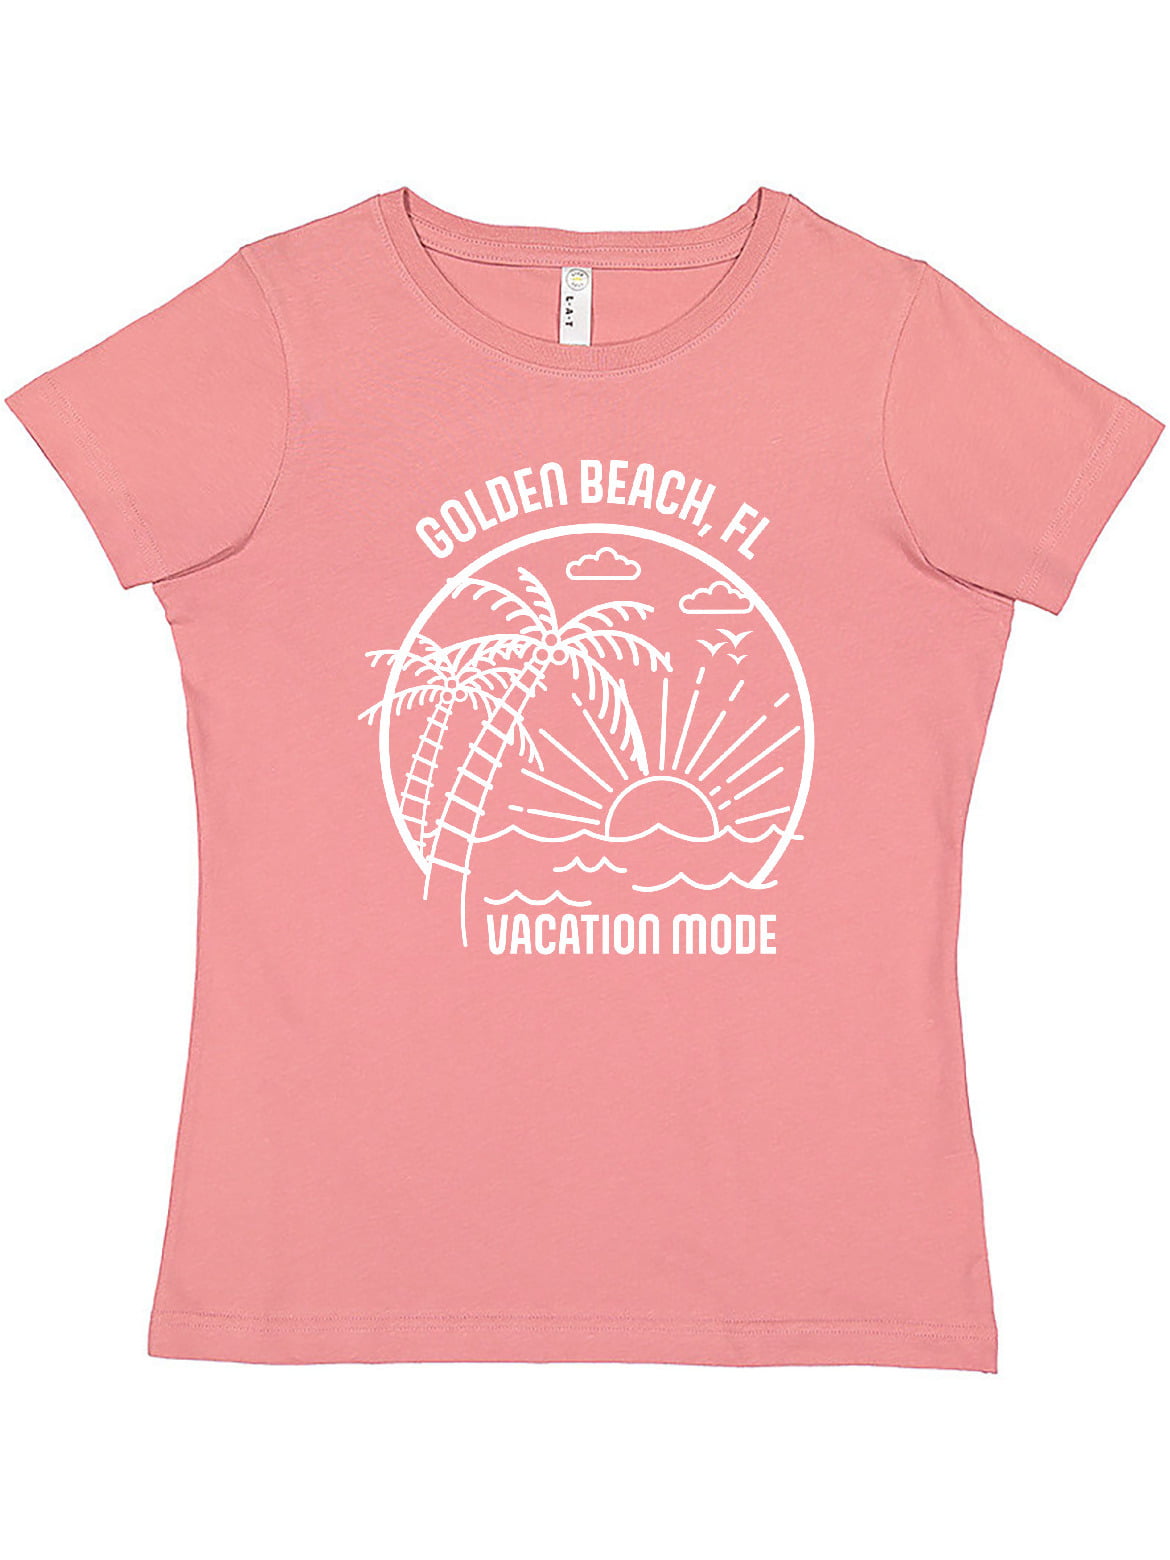 Inktastic Summer Vacation Mode Golden Beach Florida Women's T-Shirt -  Walmart.com